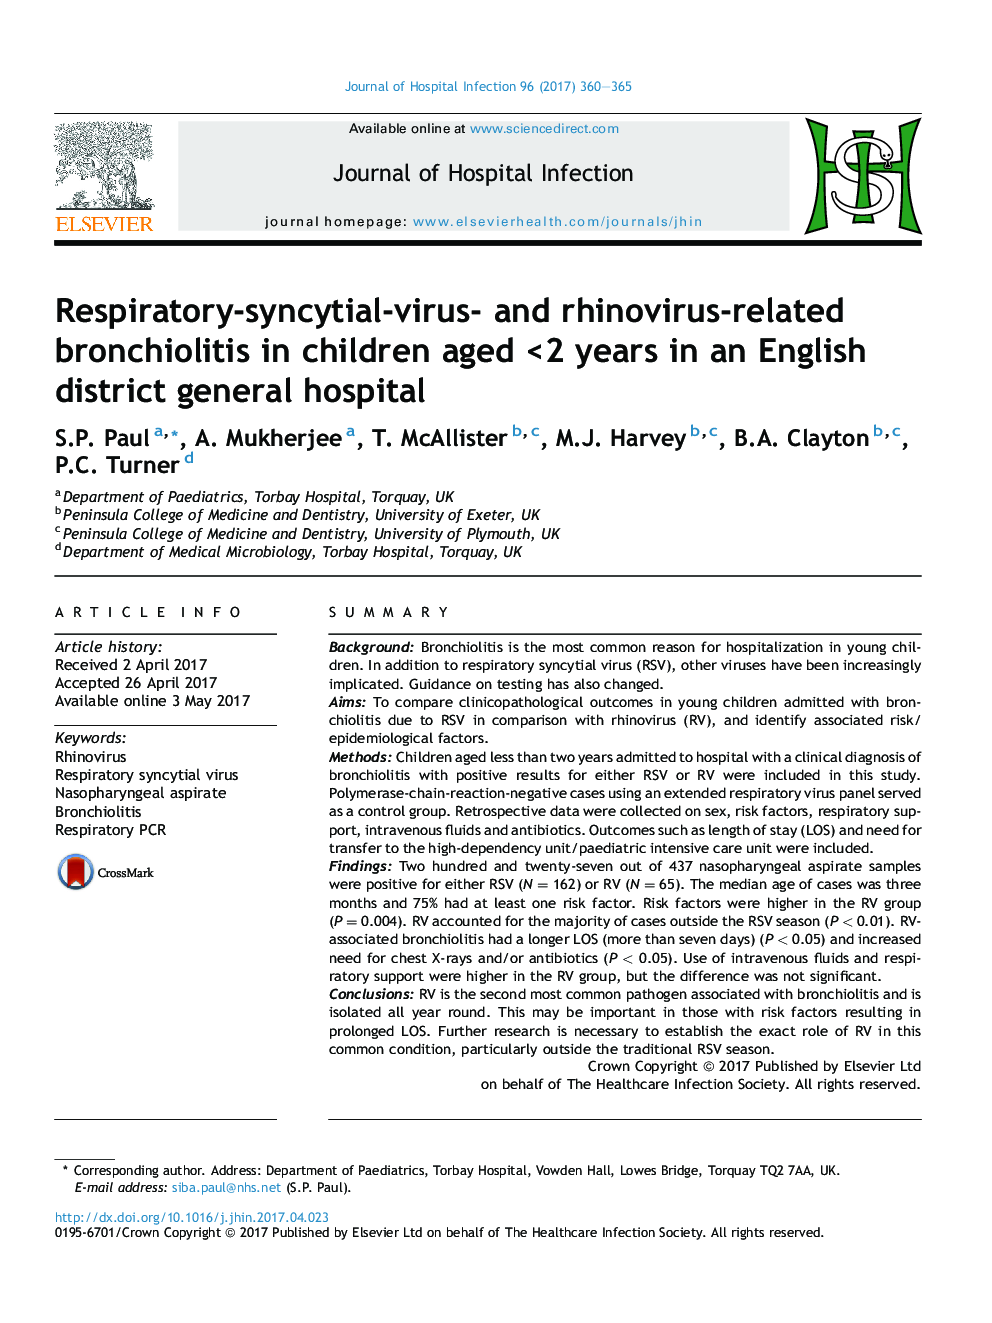 برونشیولیت مرتبط با تنفس-سنین سایتی و ویروس رینویروس در کودکان <2 ساله در بیمارستان عمومی انگلستان 